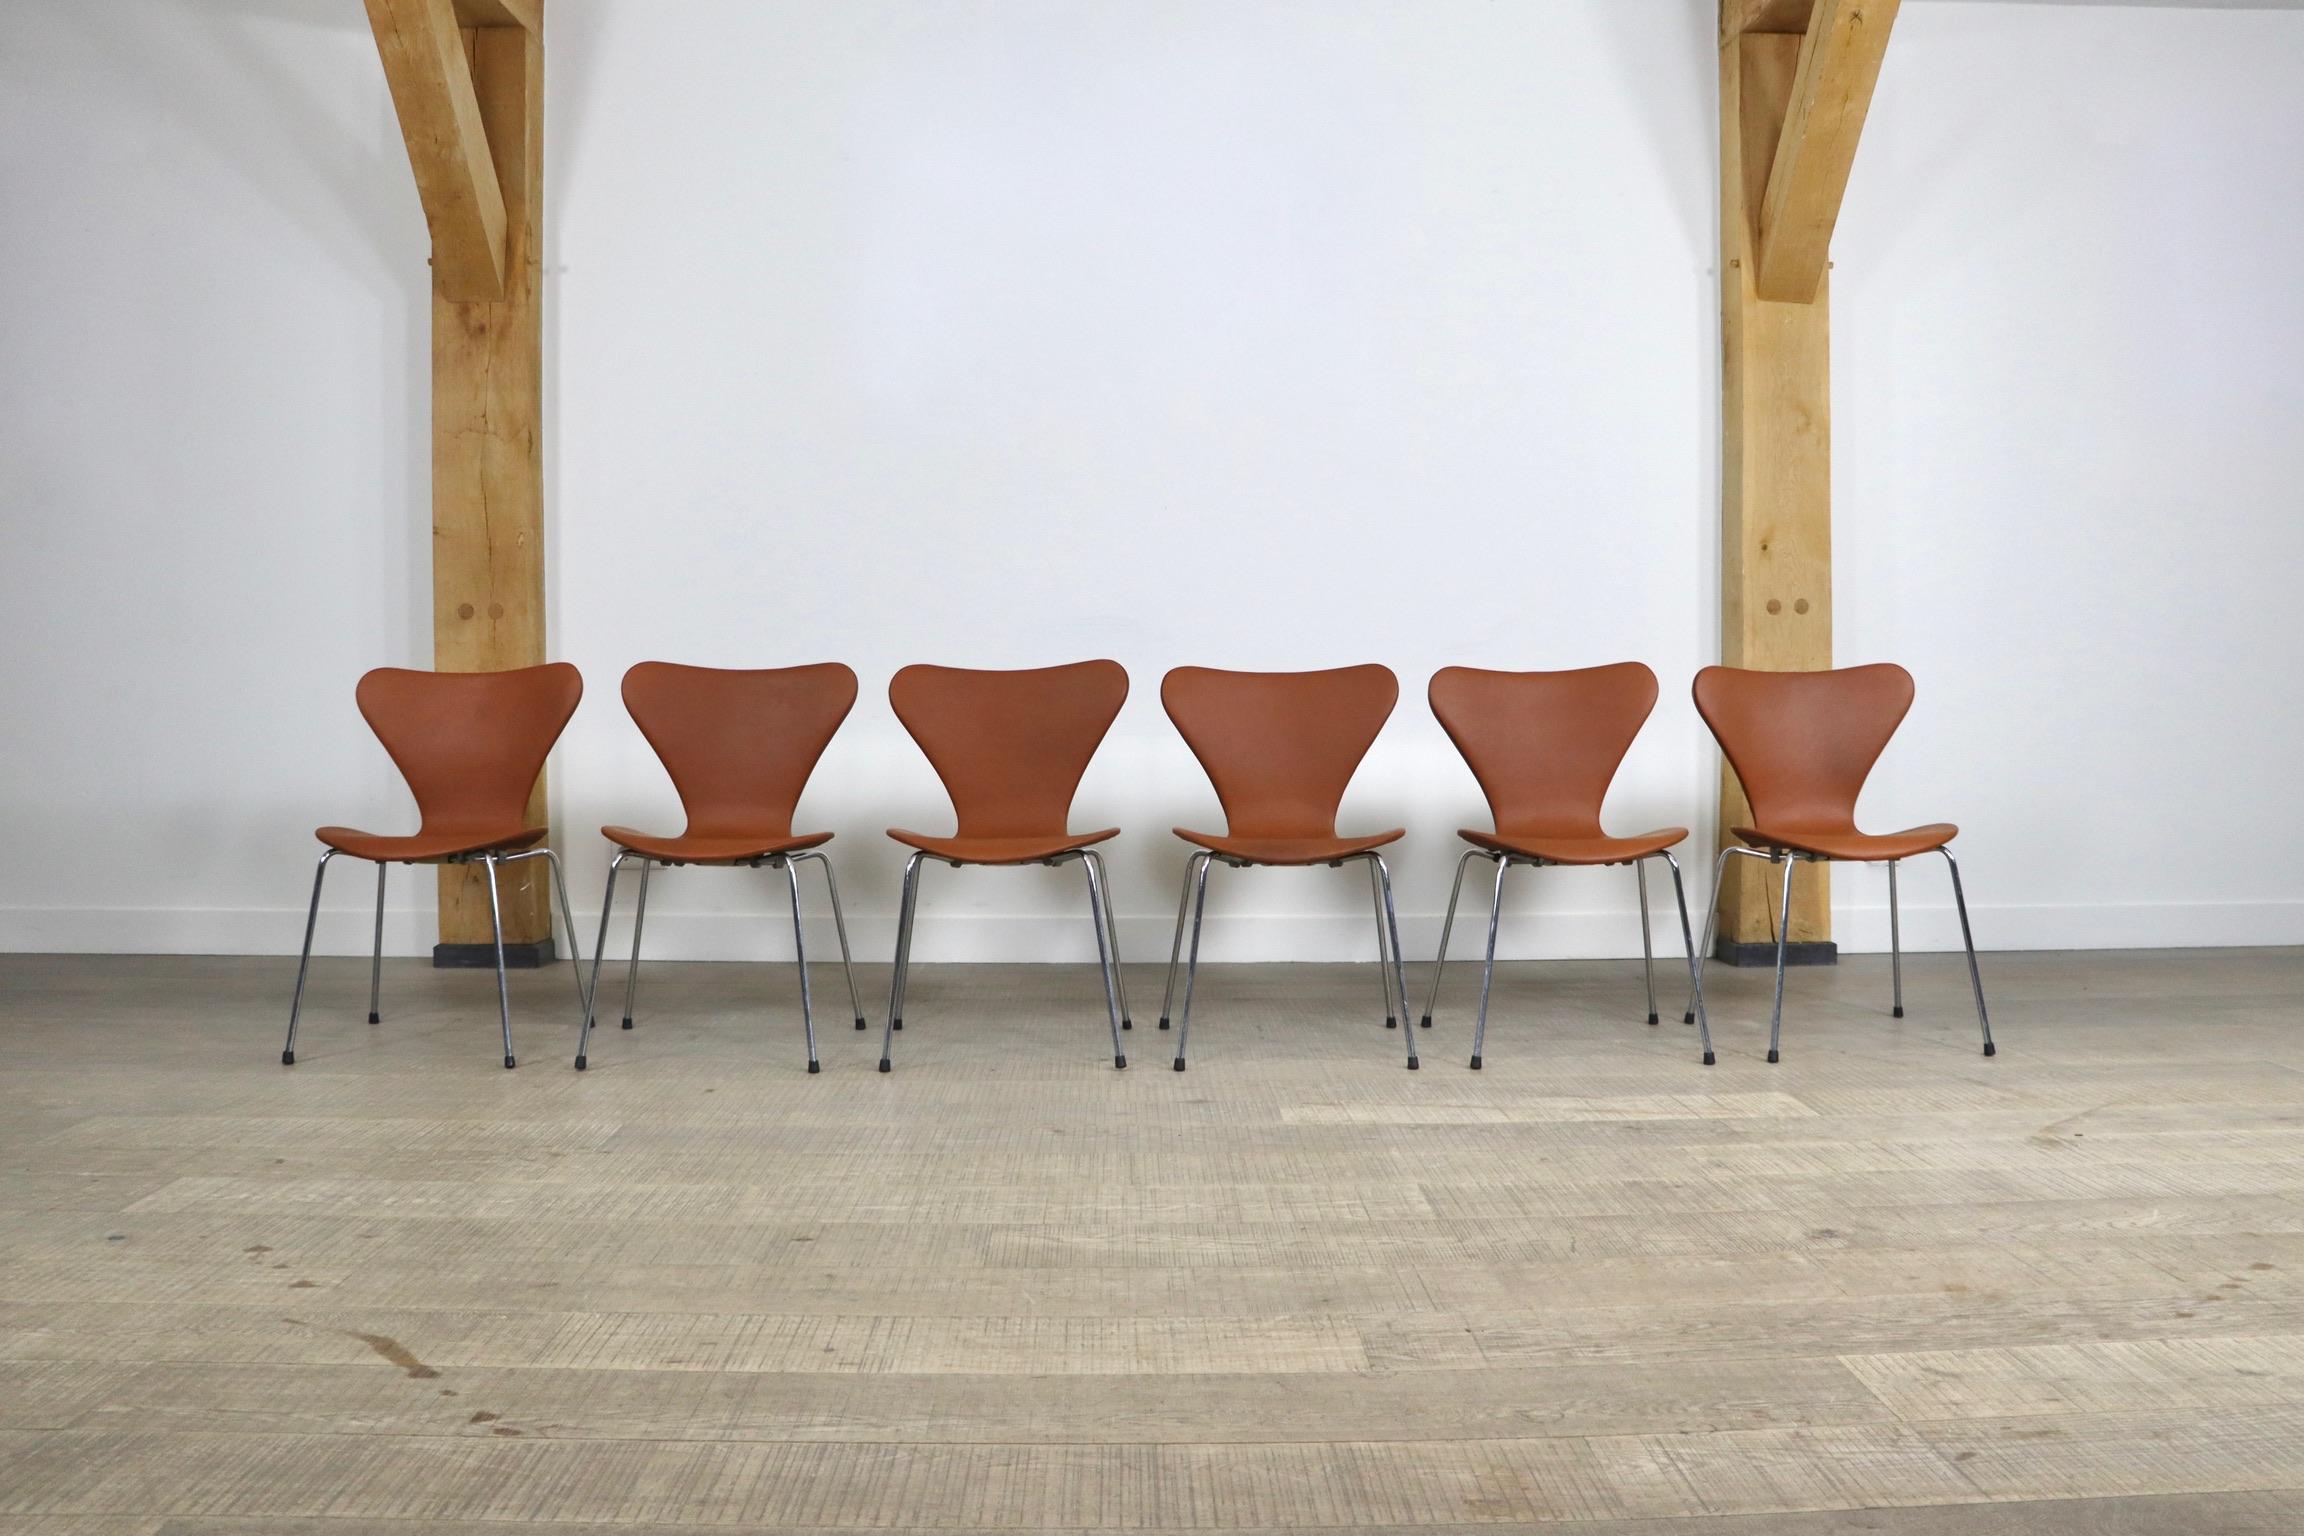 Étonnant ensemble de 6 chaises Butterfly conçues par Arne Jacobsen pour Fritz Hansen, Danemark 1979. Ces chaises sont tapissées d'un magnifique cuir aniline cognac et sont en excellent état. Un design minimaliste et intemporel qui a toujours été